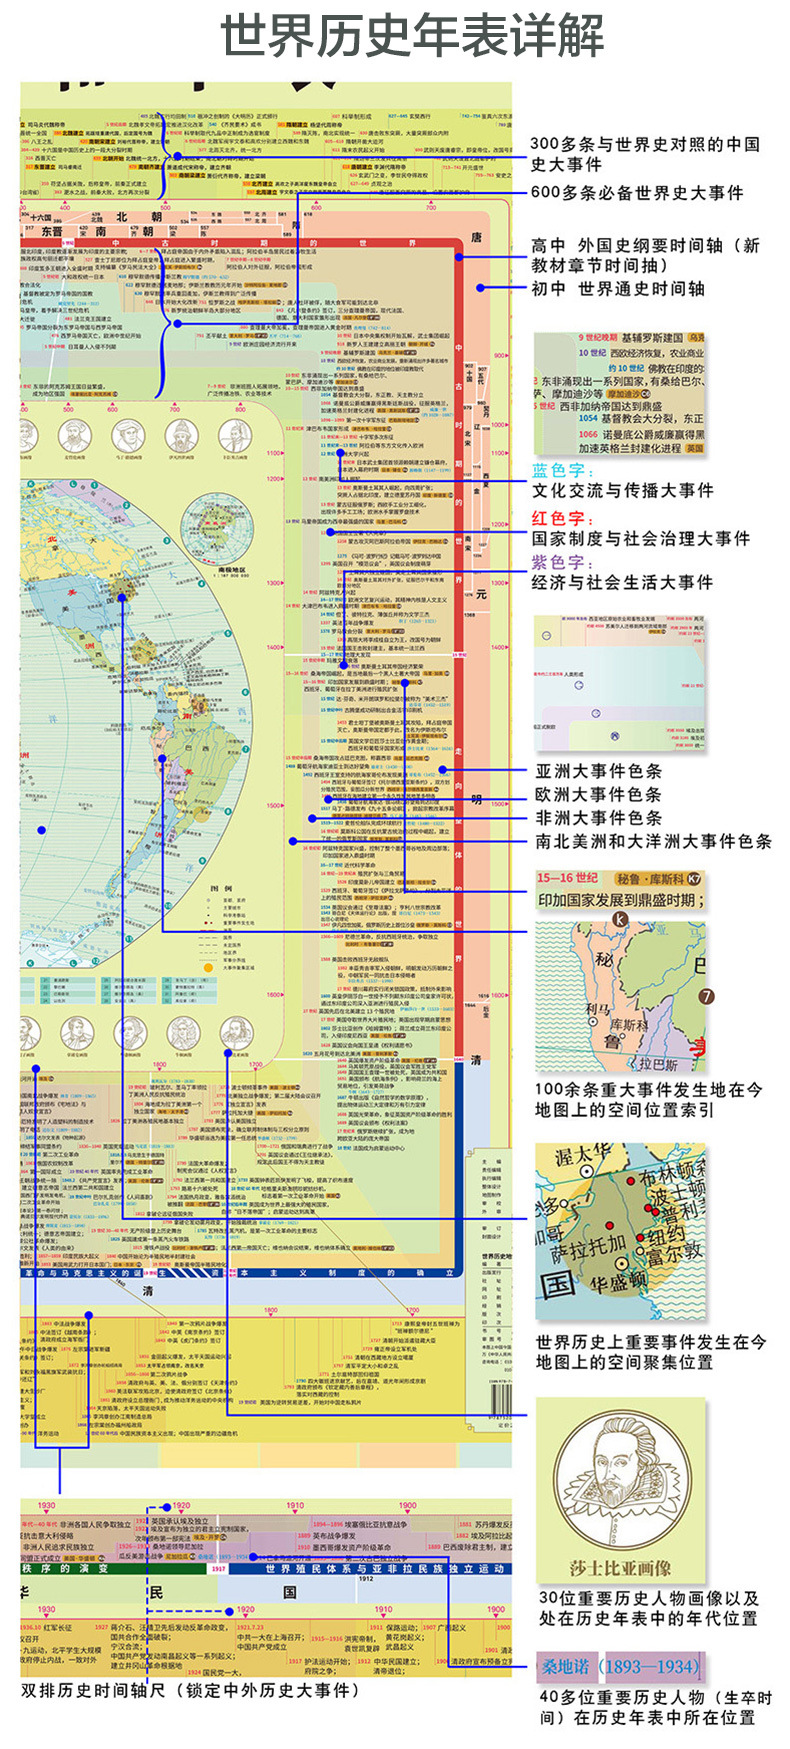 世界历史地图和年表/中国历史地图和年表初高中历史地图117*86cm